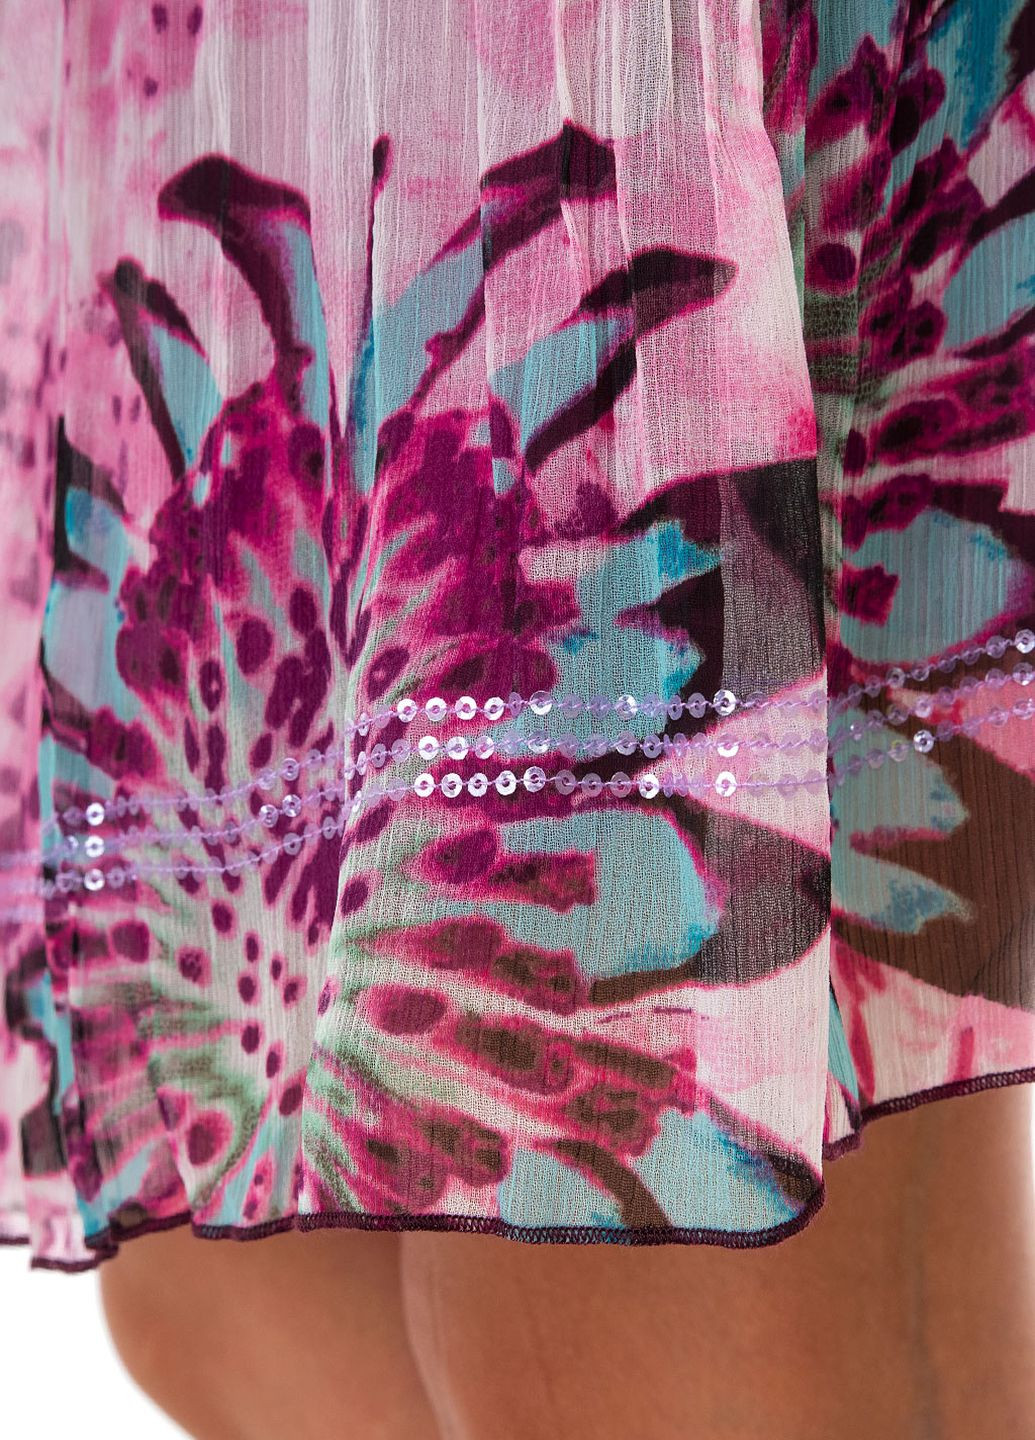 Разноцветная цветочной расцветки юбка Marc Aurel